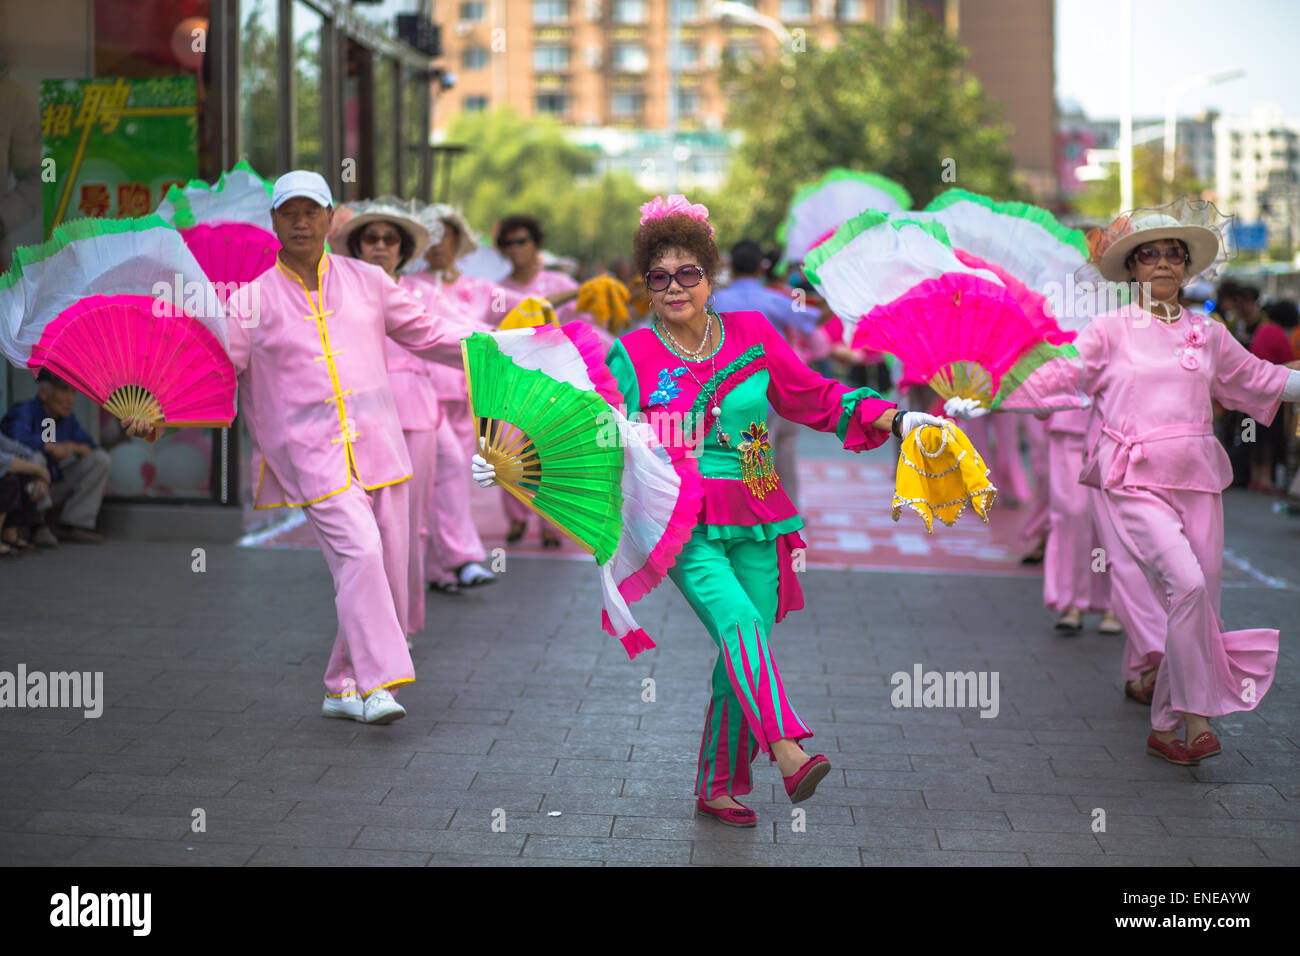 Tantes chinois danser sur la rue Banque D'Images